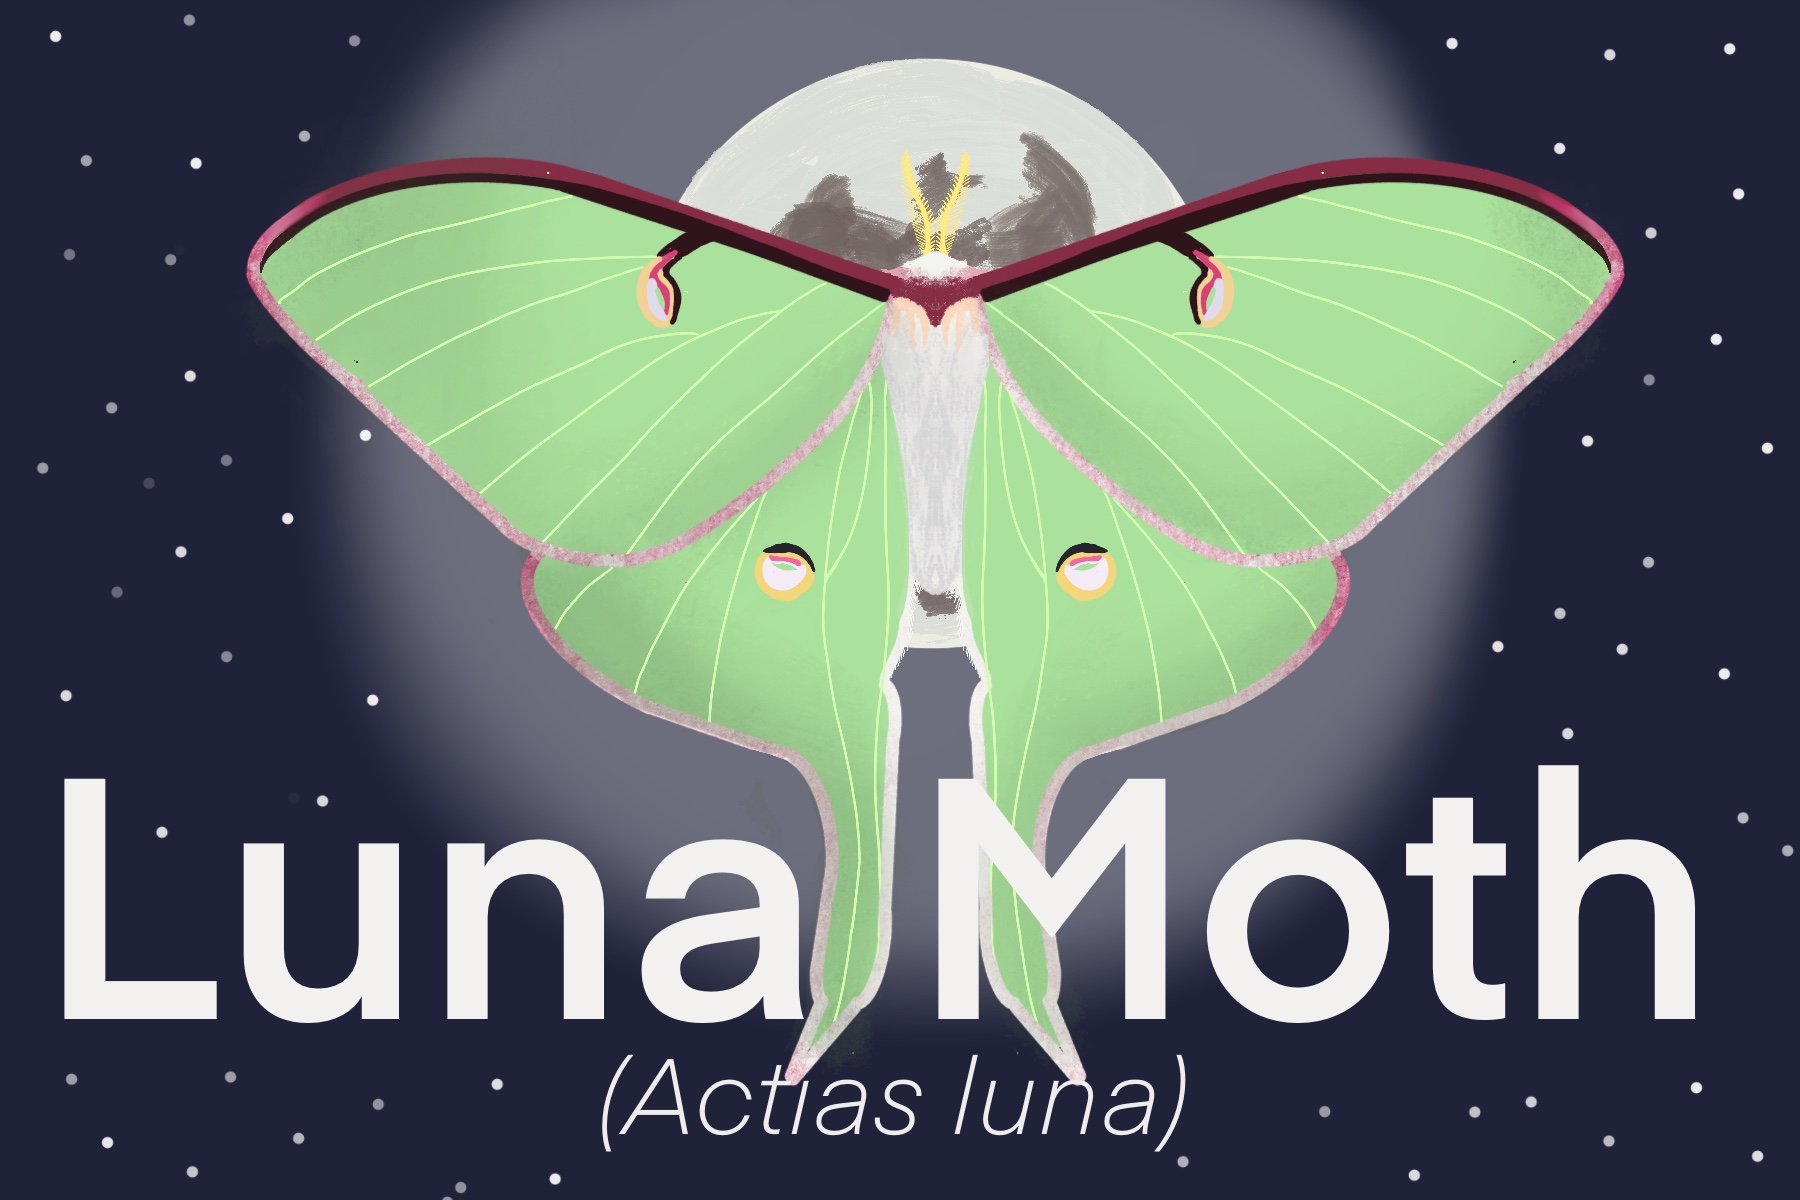 Luna Moths (Actias luna) only live for a week. 